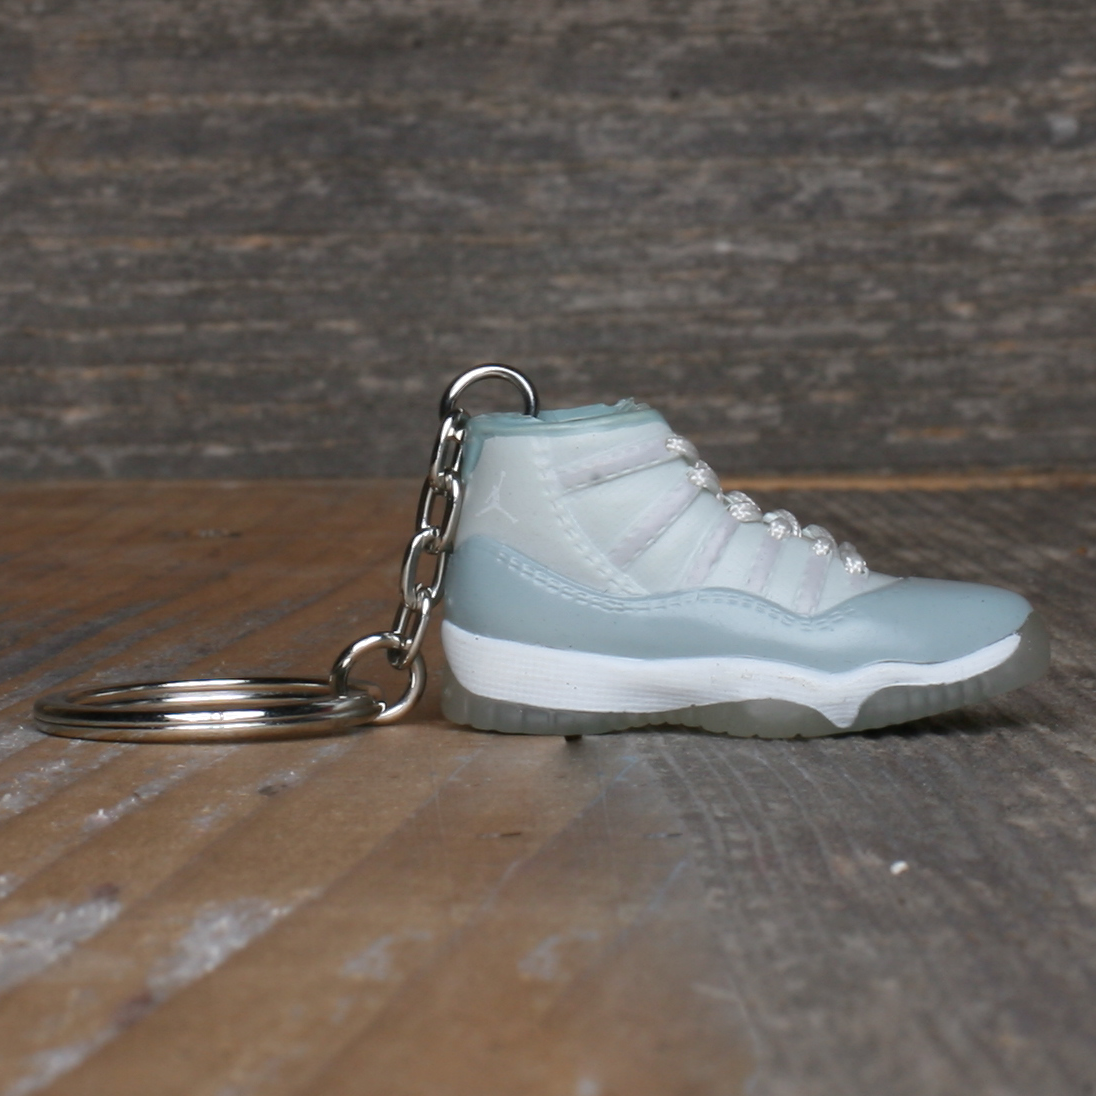 Jordan Cool Grey 11 Sneaker Keychain